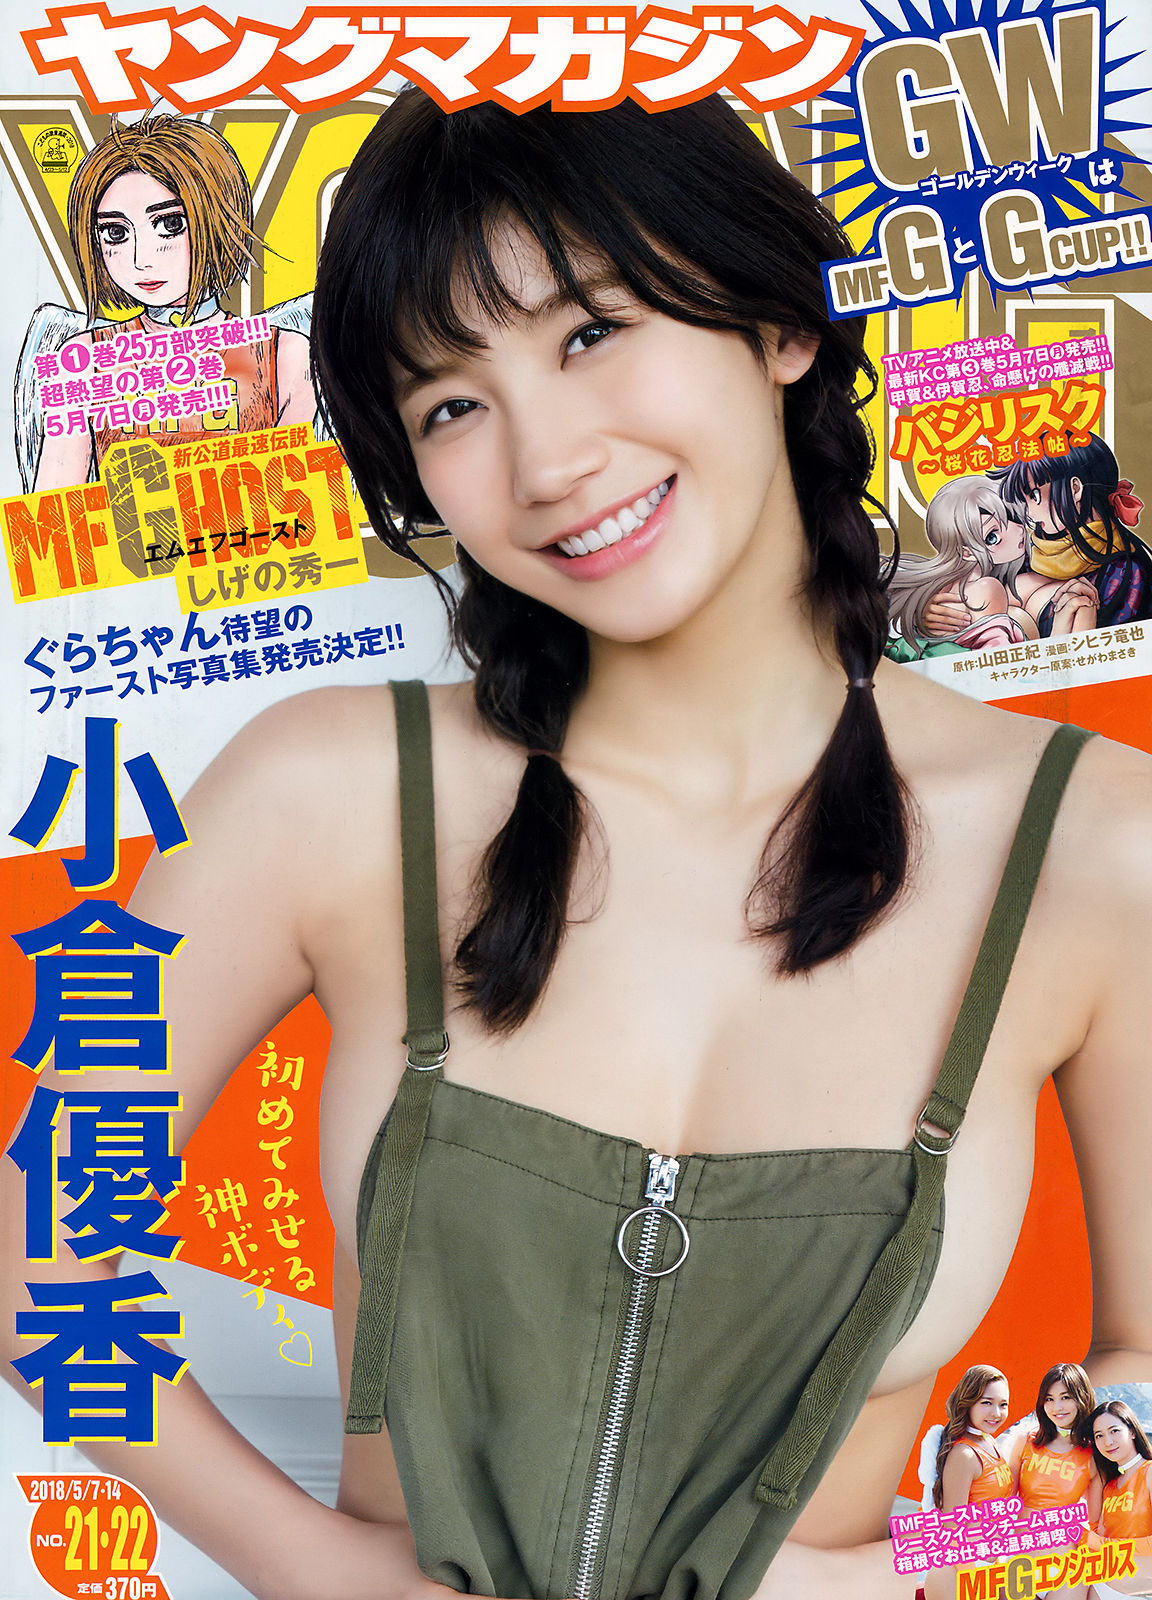 [Young Magazine]日本嫩模:小仓优香(小倉優香)高品质写真大图收藏合集(12P)